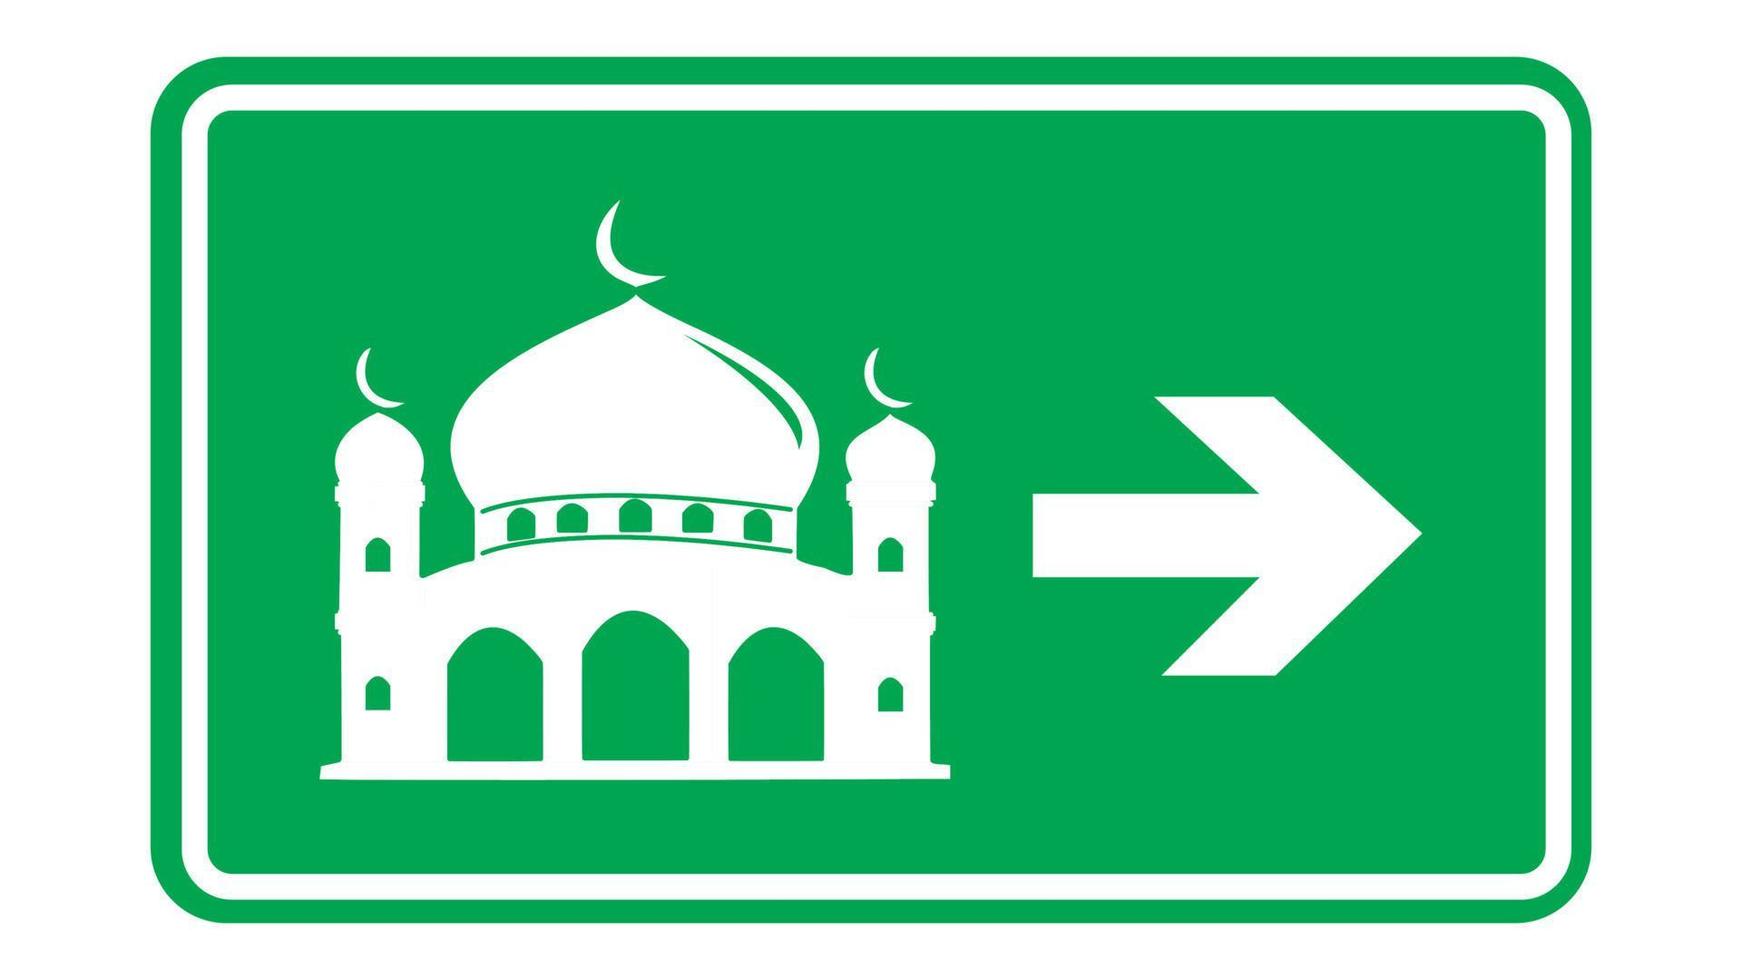 moské tecken symbol ikon med pil, masjid gata tecken symbol grön design vektor illustration